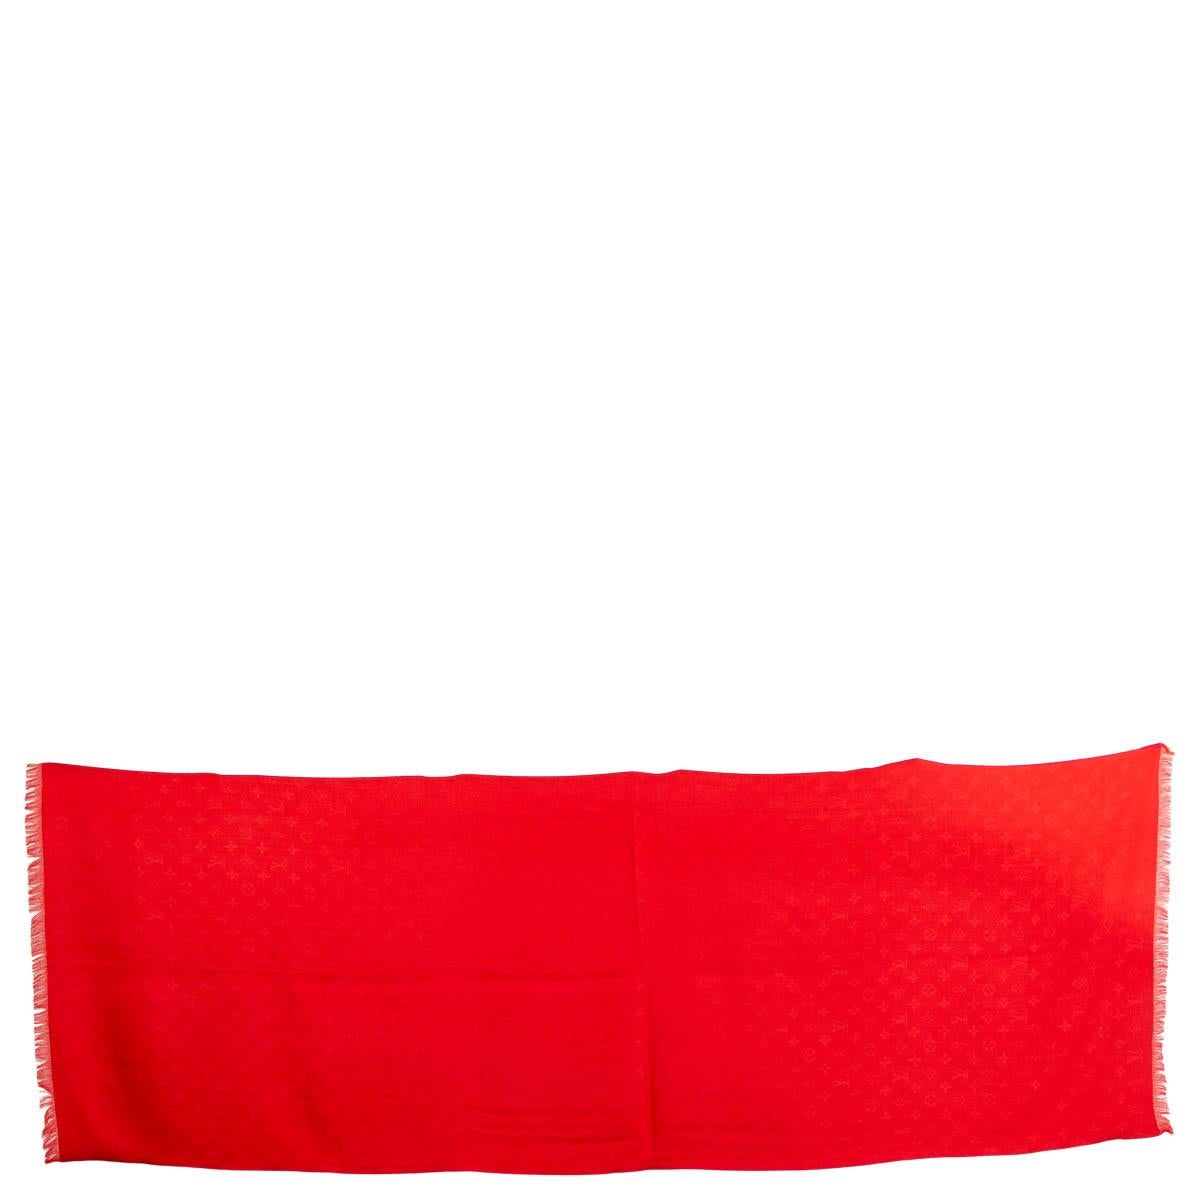 100% authentischer Louis Vuitton Monogram Fransenschal mit doppeltem Gesicht aus rosa Seide (100%) und rotem Kaschmir (100%). Wurde getragen und ist in ausgezeichnetem Zustand. 

Messungen
Breite	65cm (25.4in)
Länge	180cm (70.2in)

Alle unsere